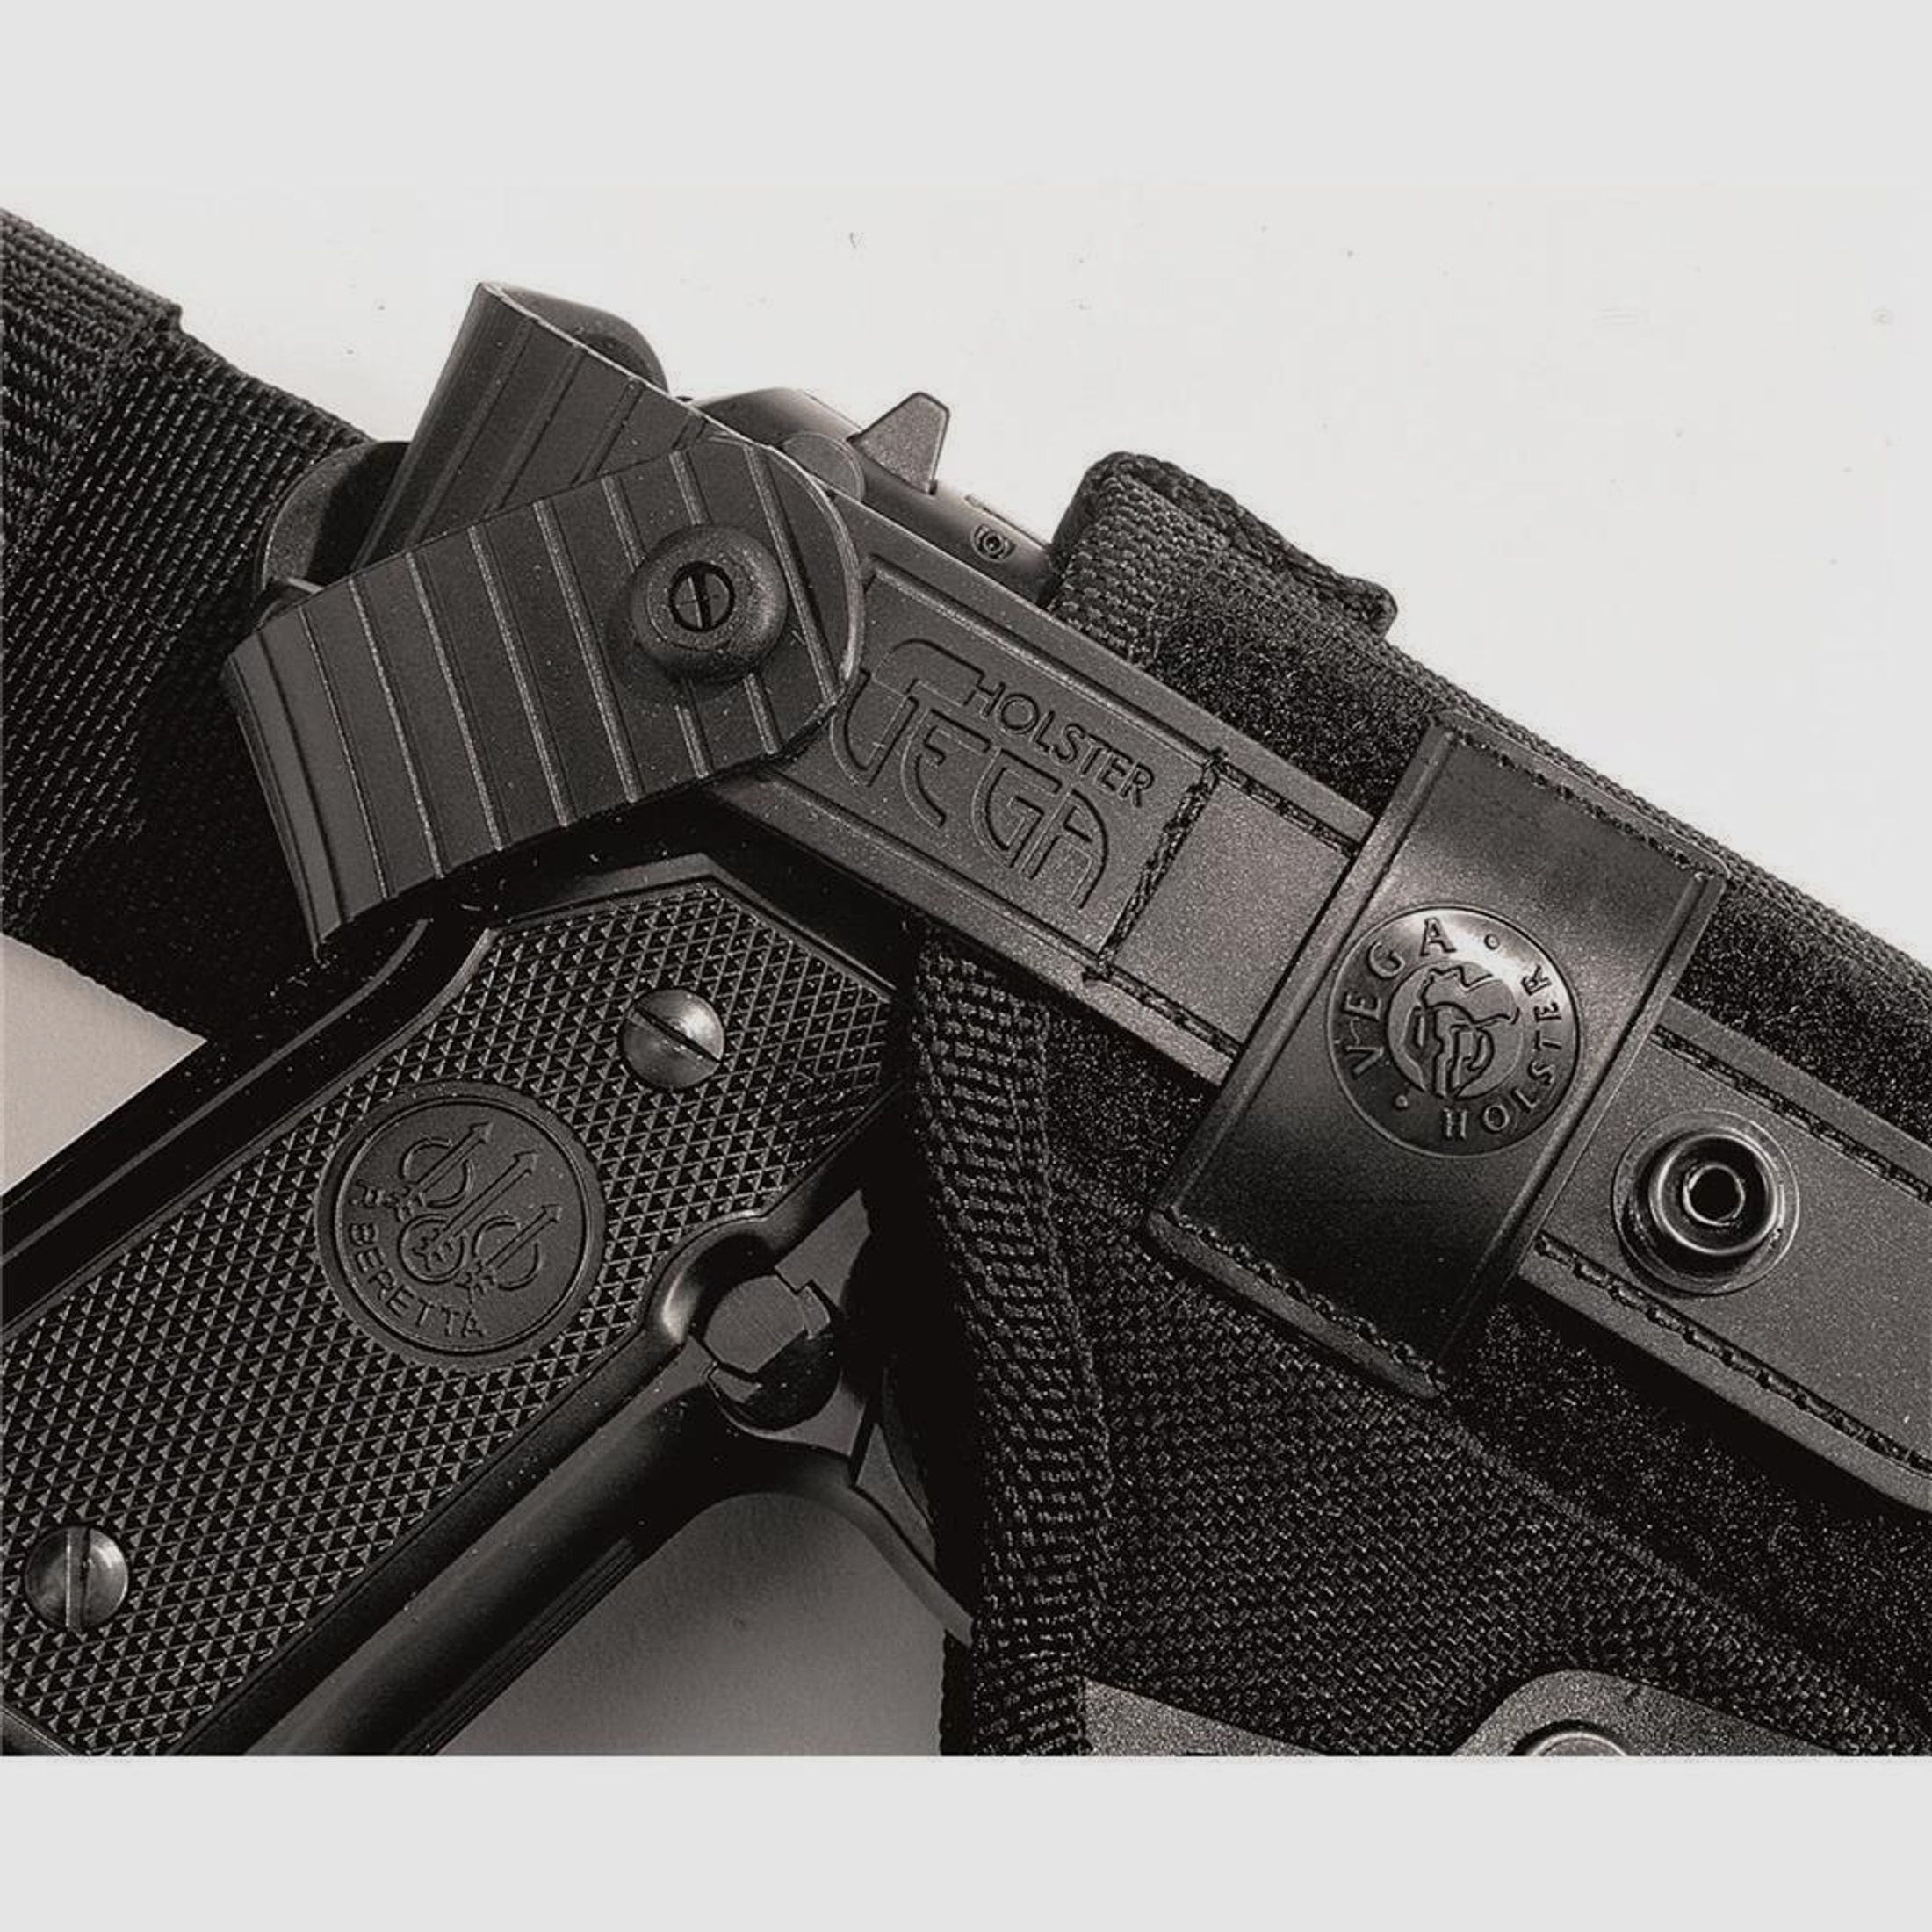 Taktisches Oberschenkelholster mit doppelter Sicherungslasche Glock 20/21/29/30/36, H&K USP/P30L, SFP9-VP9, CZ P07, Walther P99/PPQ,Beretta APX OD Green Linkshänder